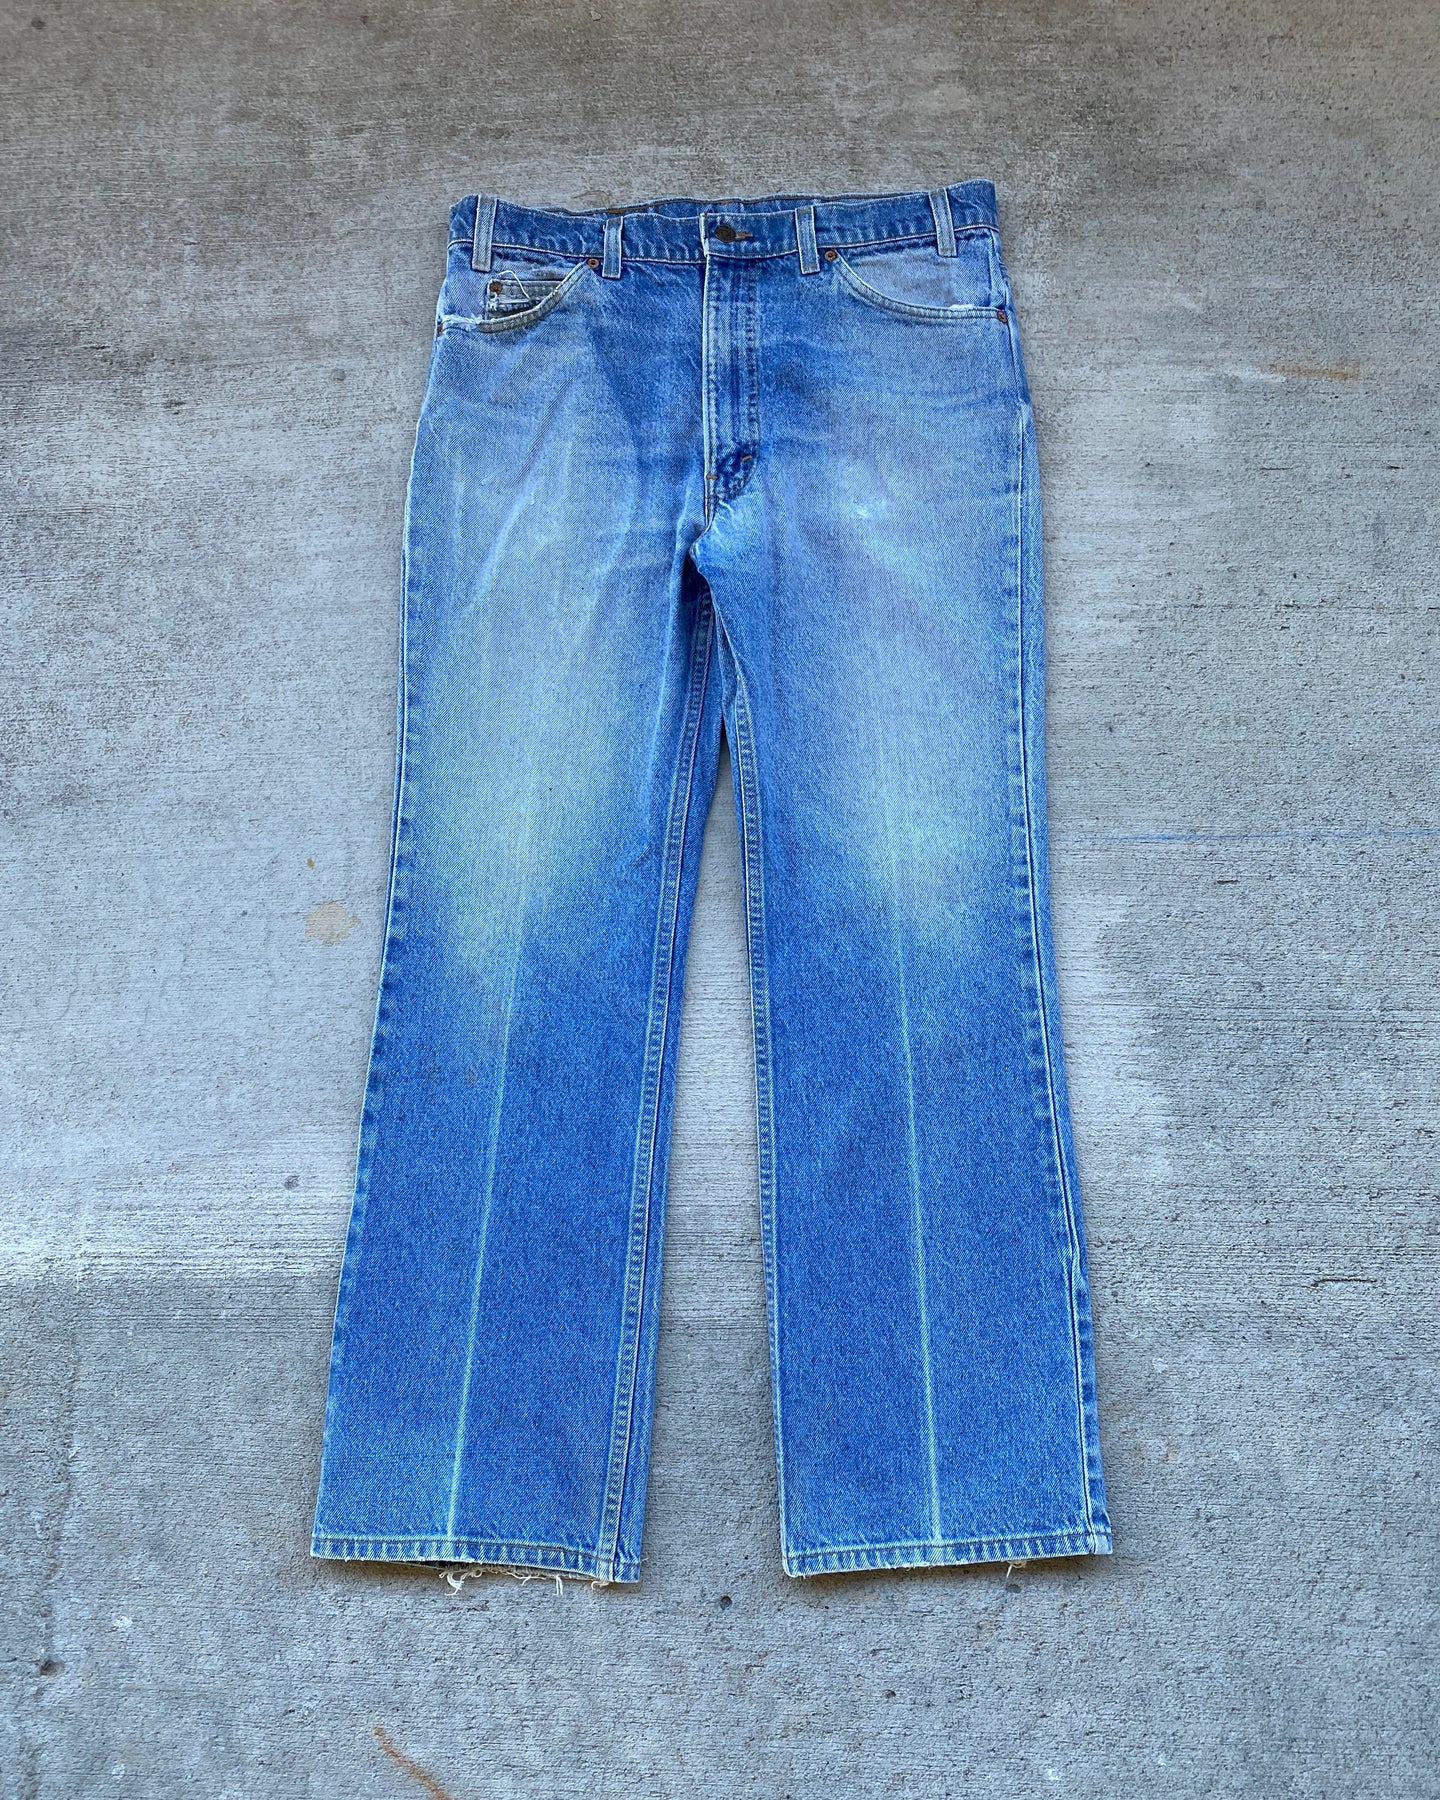 1990s Levi's 517 Light Wash Denim Jeans - Size 34 x 30